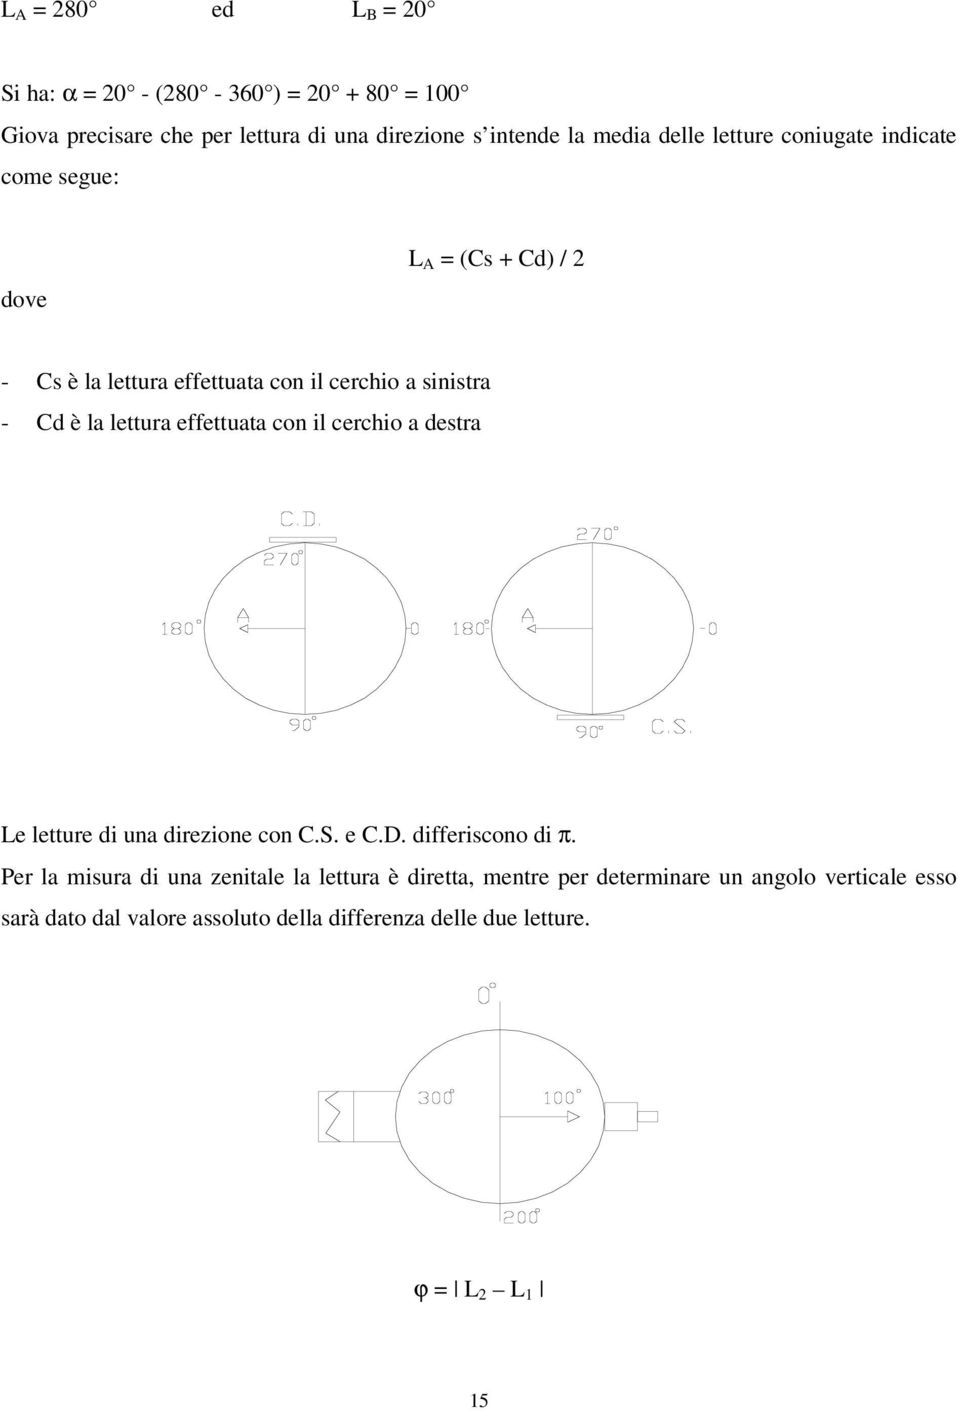 effettuata con il cerchio a destra Le letture di una direzione con C.S. e C.D. differiscono di π.